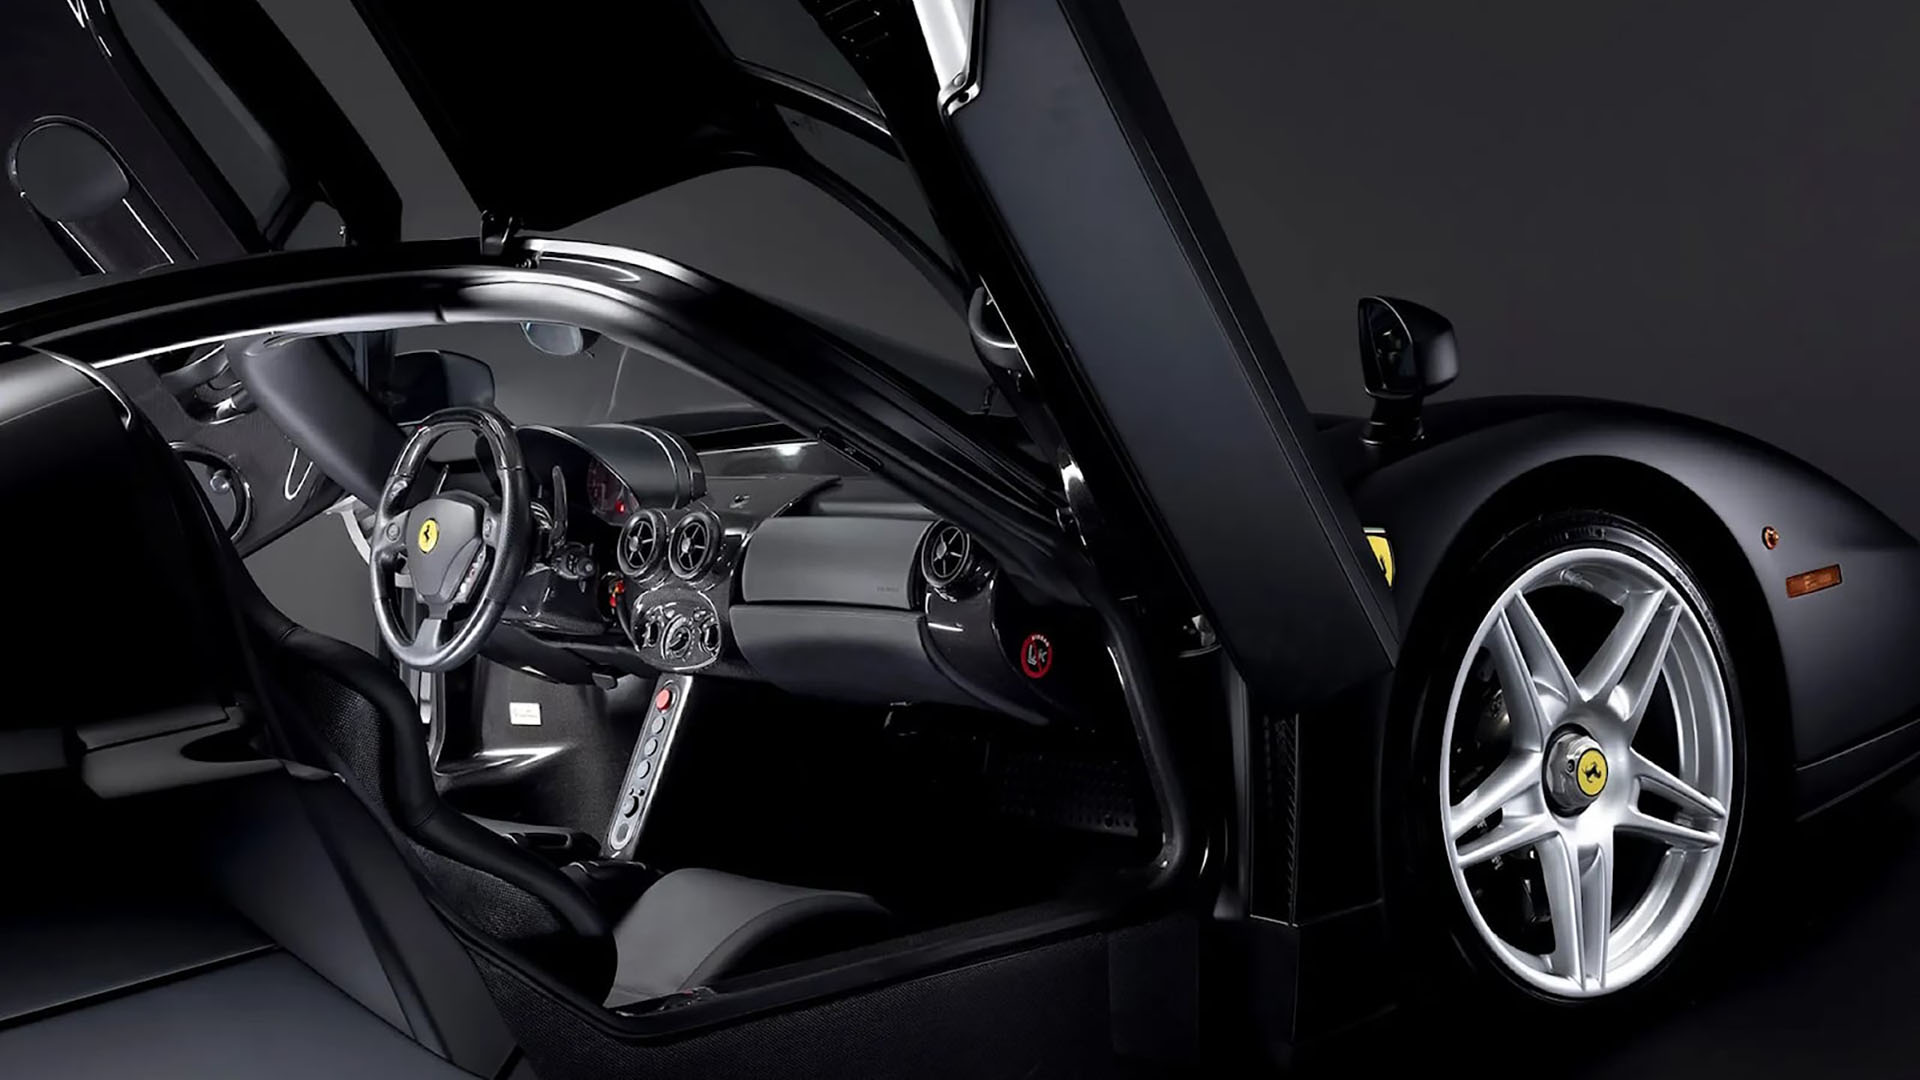 El interior de la Ferrari Enzo también es completamente negro, a diferencia de la Testarossa de Maradona que tenía tapizados blancos